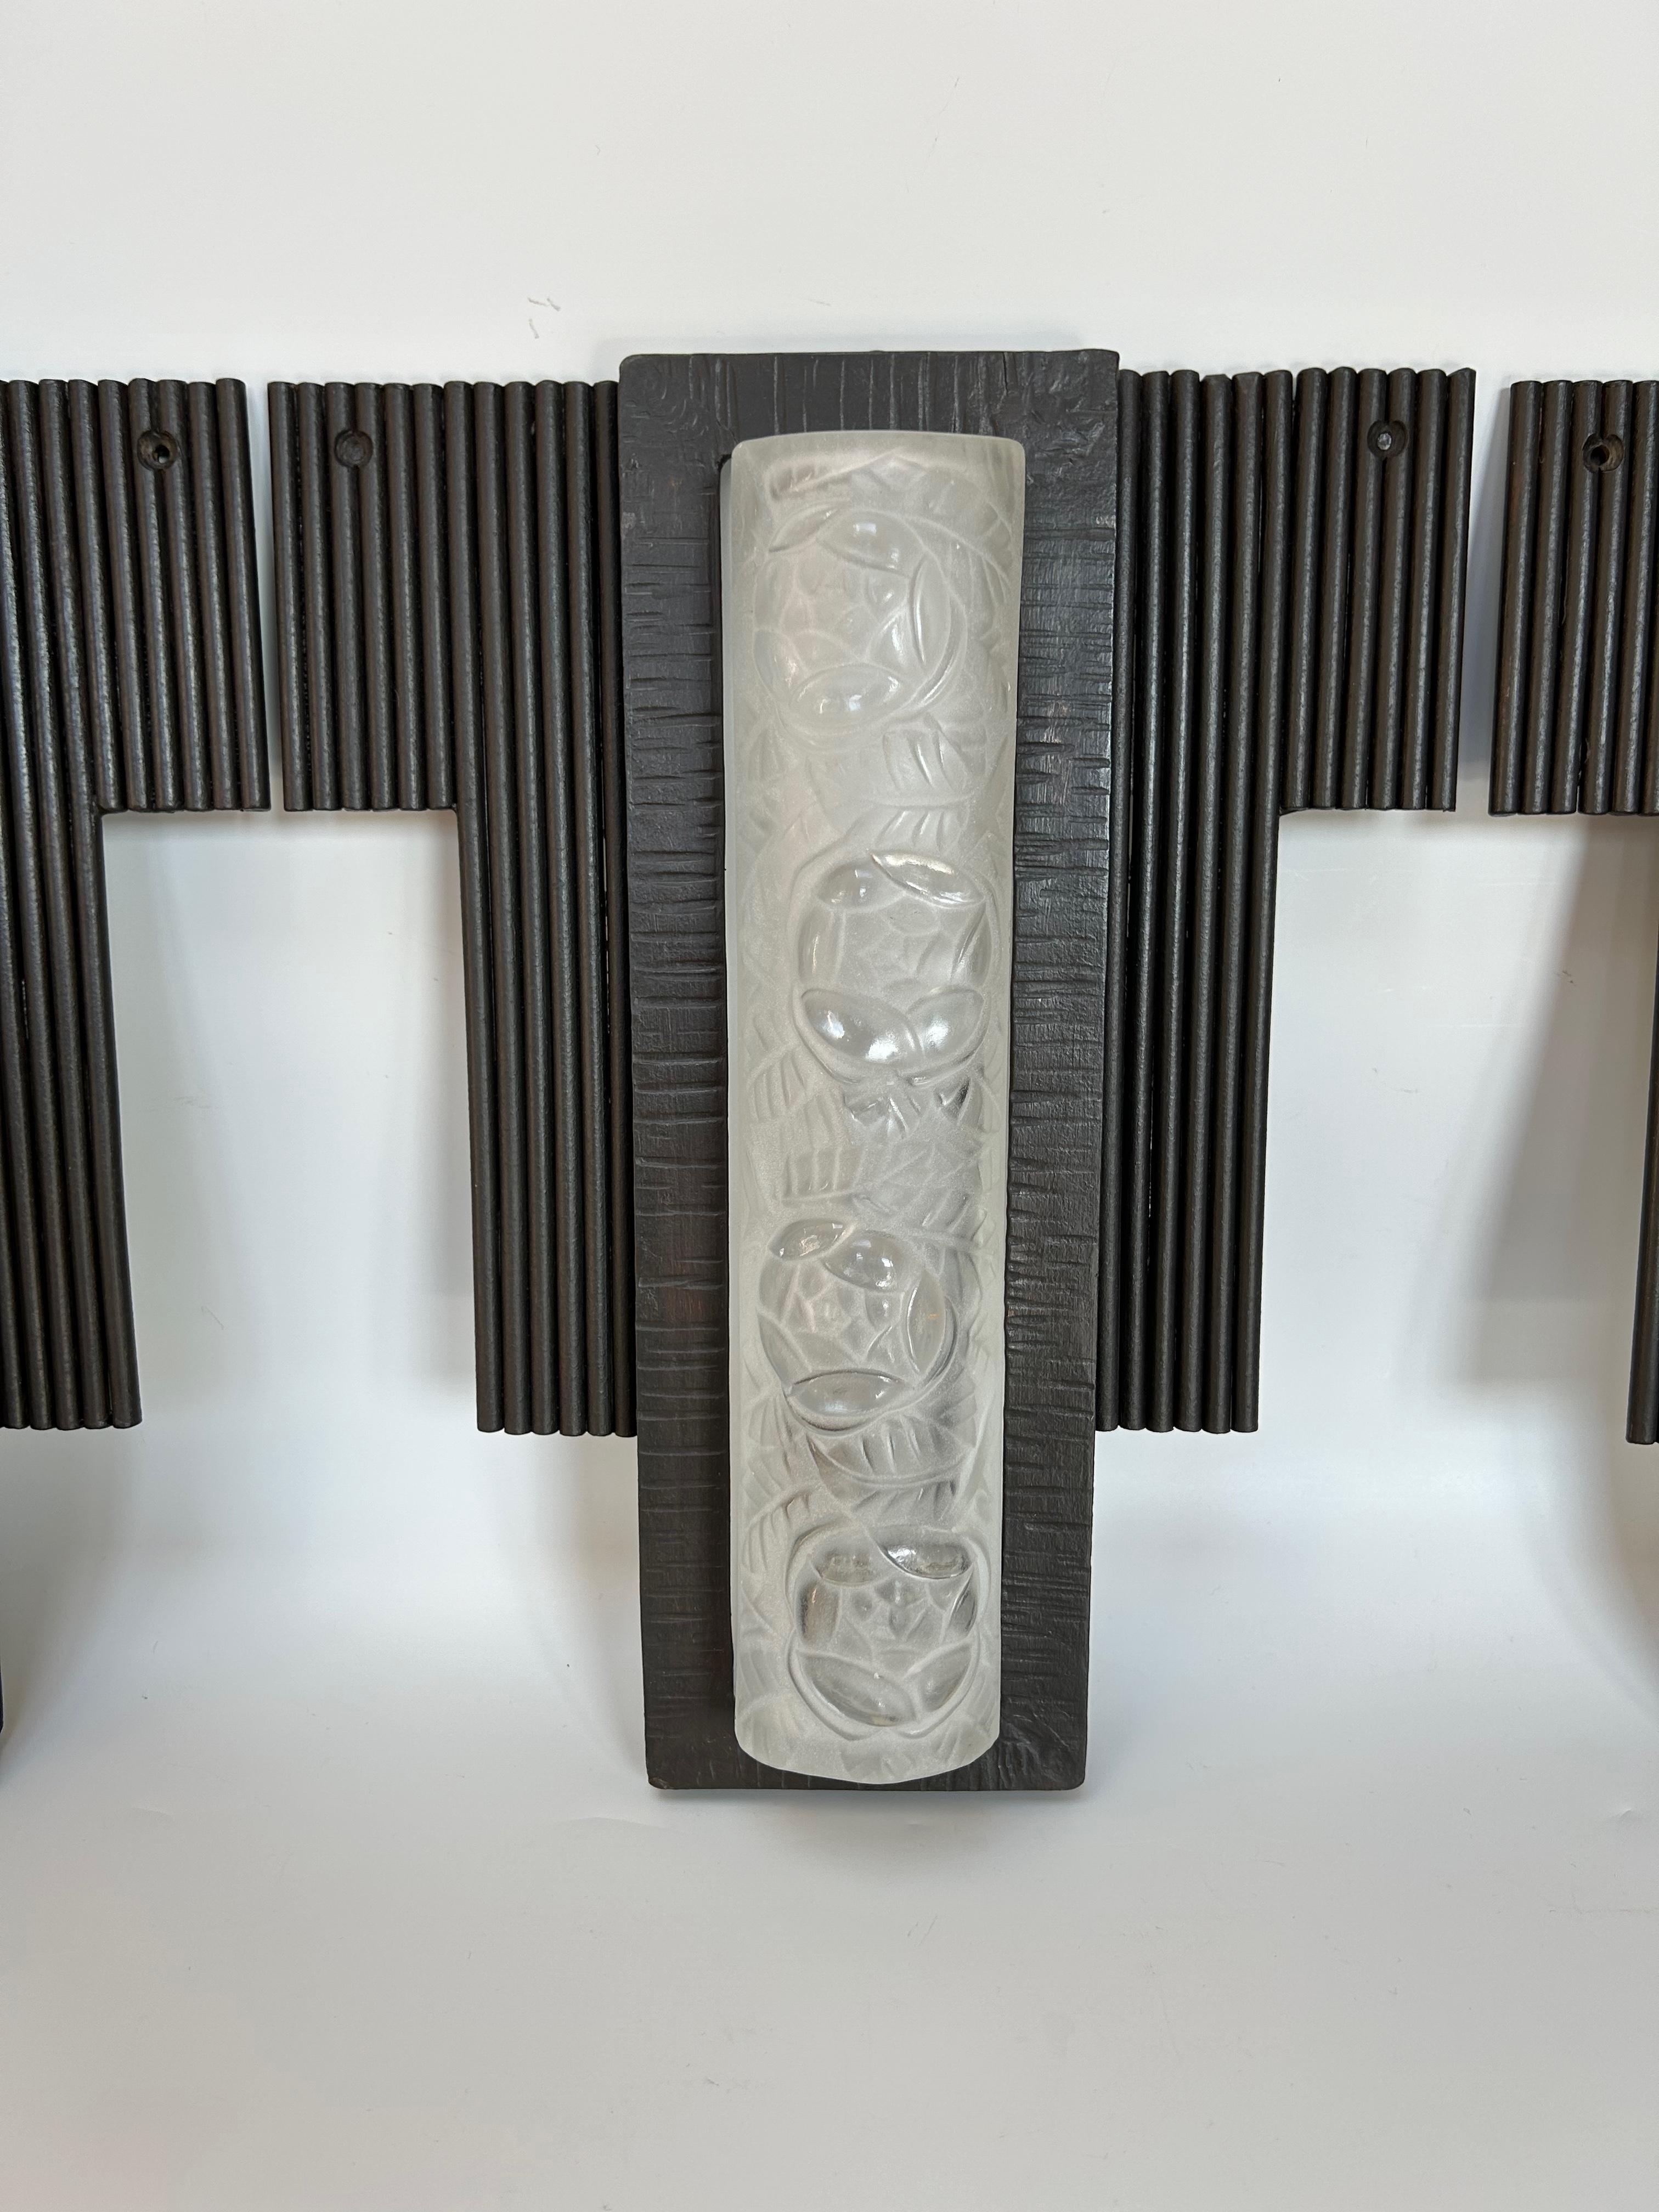 Suite von 3 Art-Deco-Wandleuchten Modell 501 von Degué, verziert mit Rosen und Blättern. 
Rahmen aus Schmiedeeisen
Elektrifiziert und in perfektem Zustand.

Breite: 25,2 cm
Höhe: 31,5 cm
Tiefe: 6,5 cm
Gewicht: 7,3 kg (2,4 kg x 3)

DEGUE (David